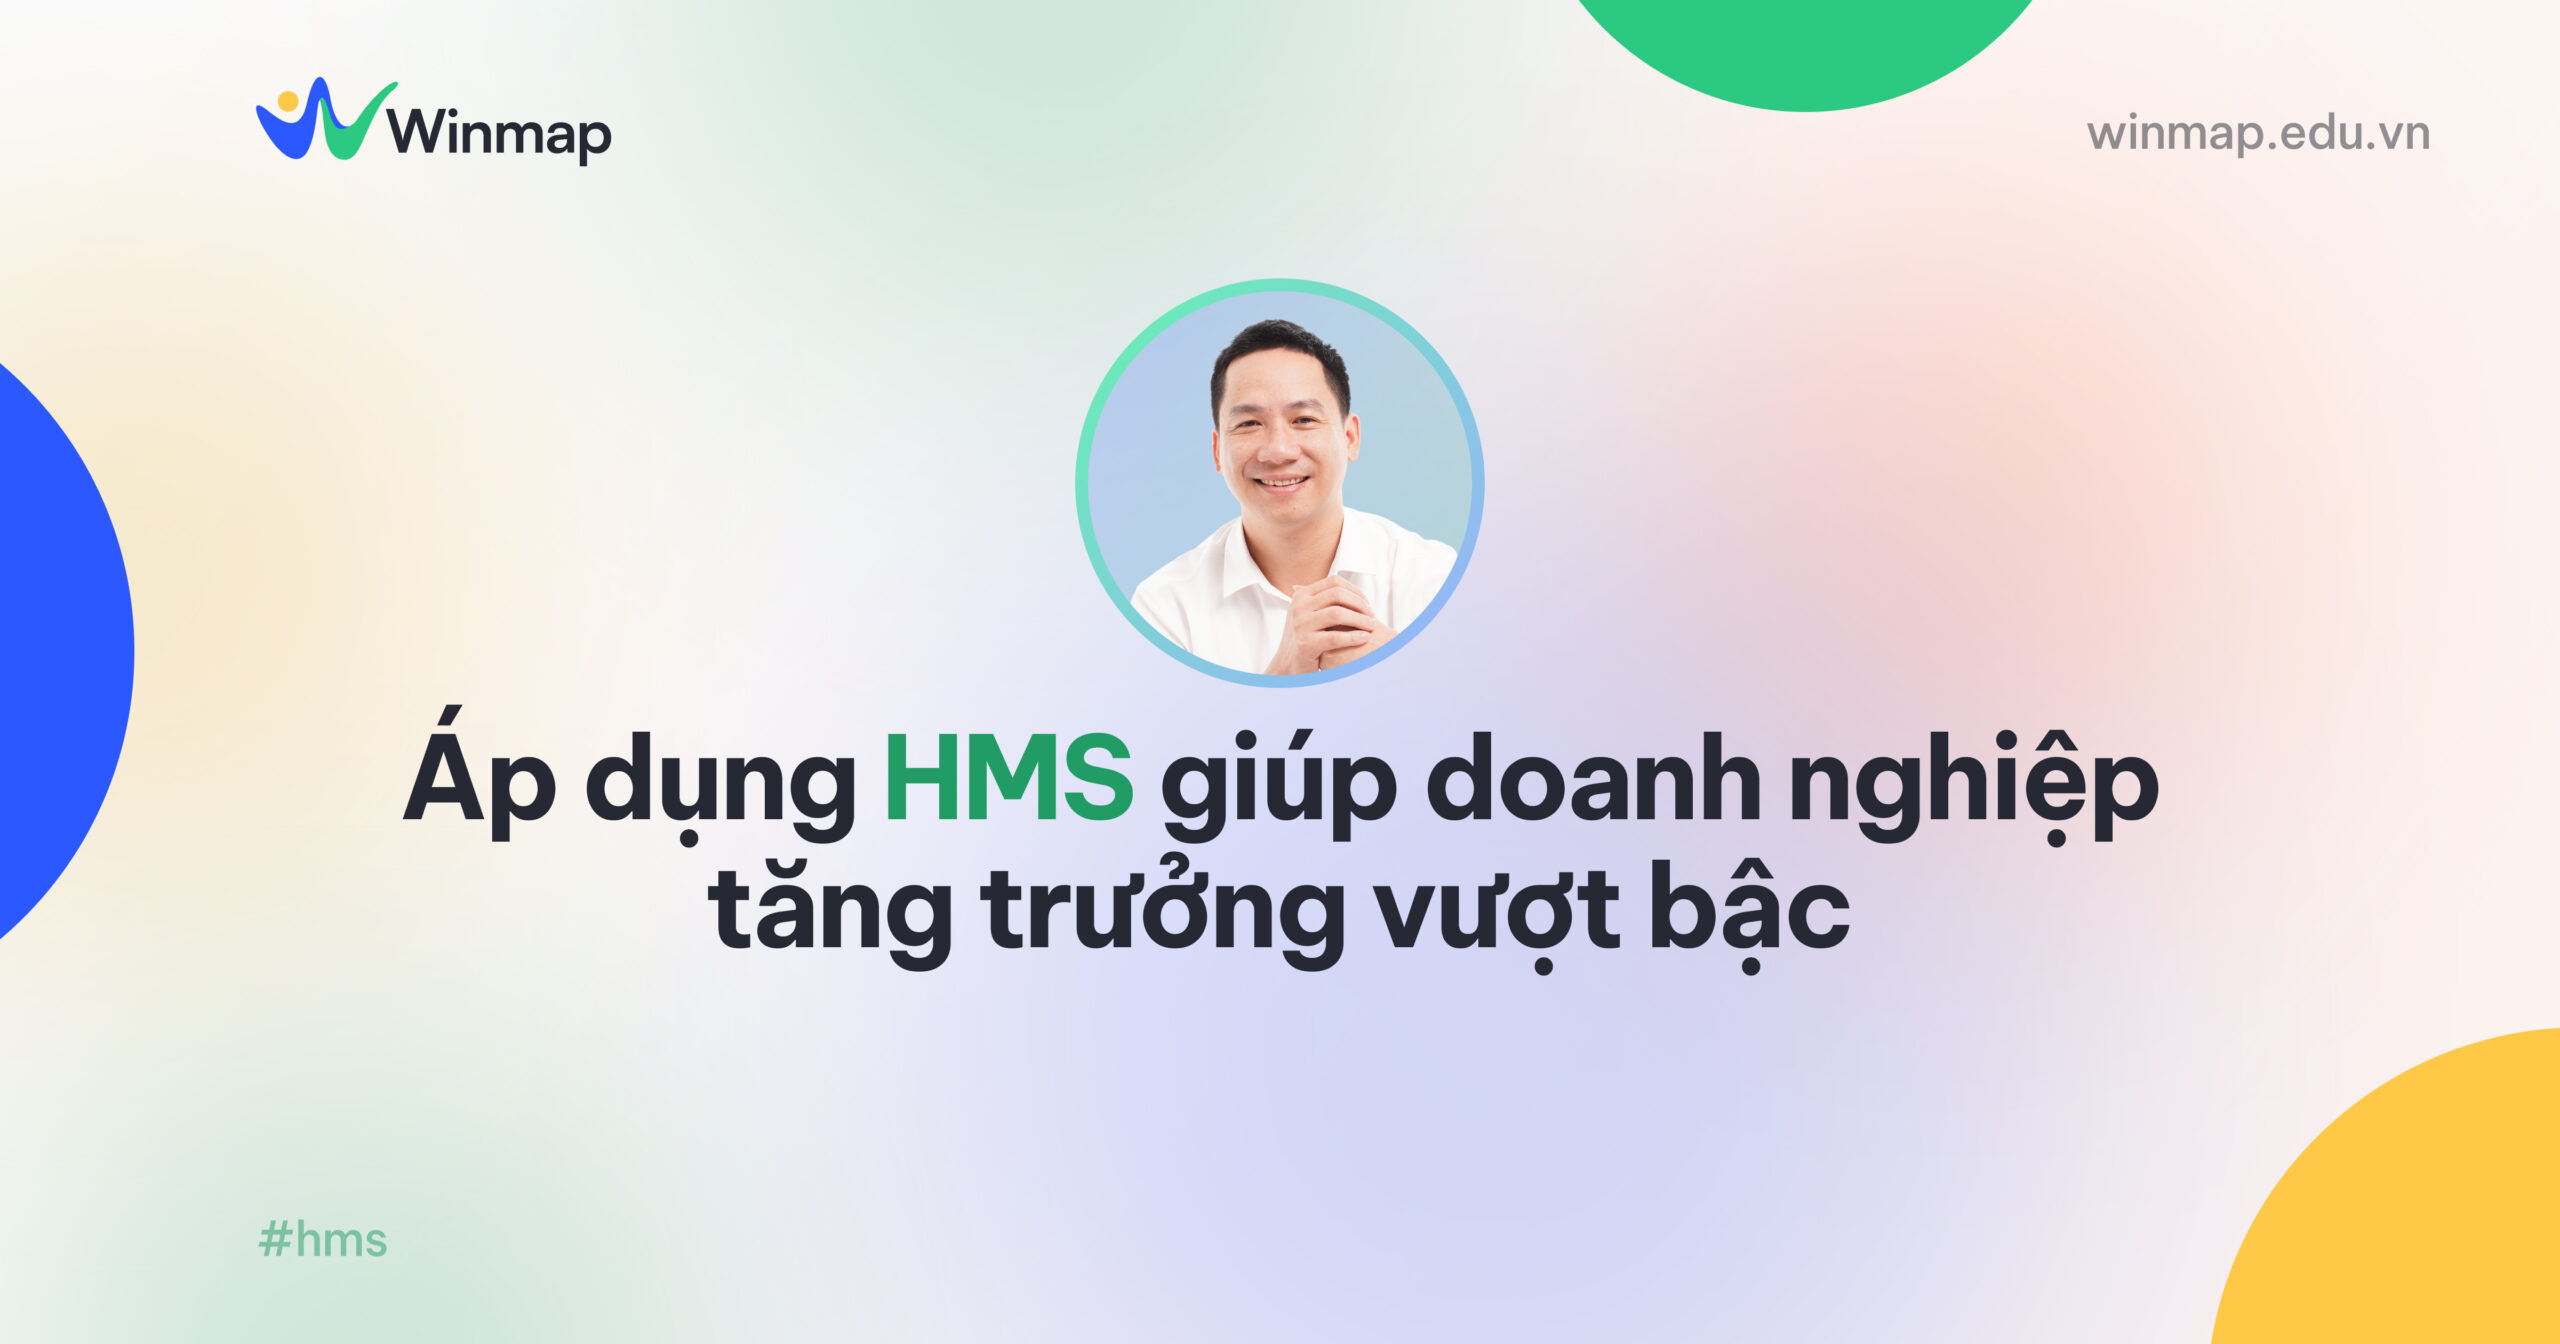 he-thong-marketing-ngang-tao-su-tang-truong-vuot-bac-cho-doanh-nghiep